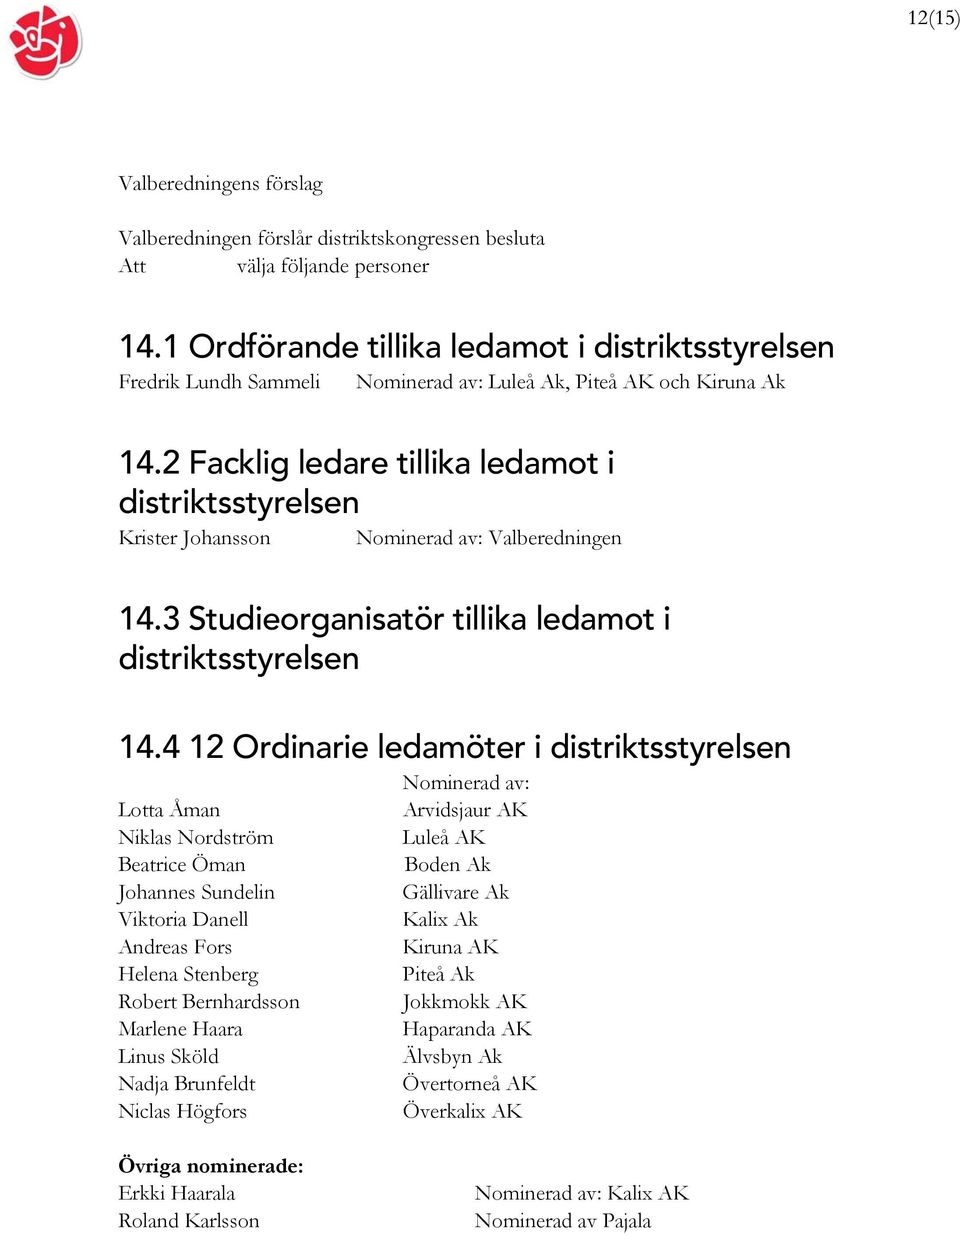 2 Facklig ledare tillika ledamot i distriktsstyrelsen Krister Johansson Nominerad av: Valberedningen 14.3 Studieorganisatör tillika ledamot i distriktsstyrelsen 14.